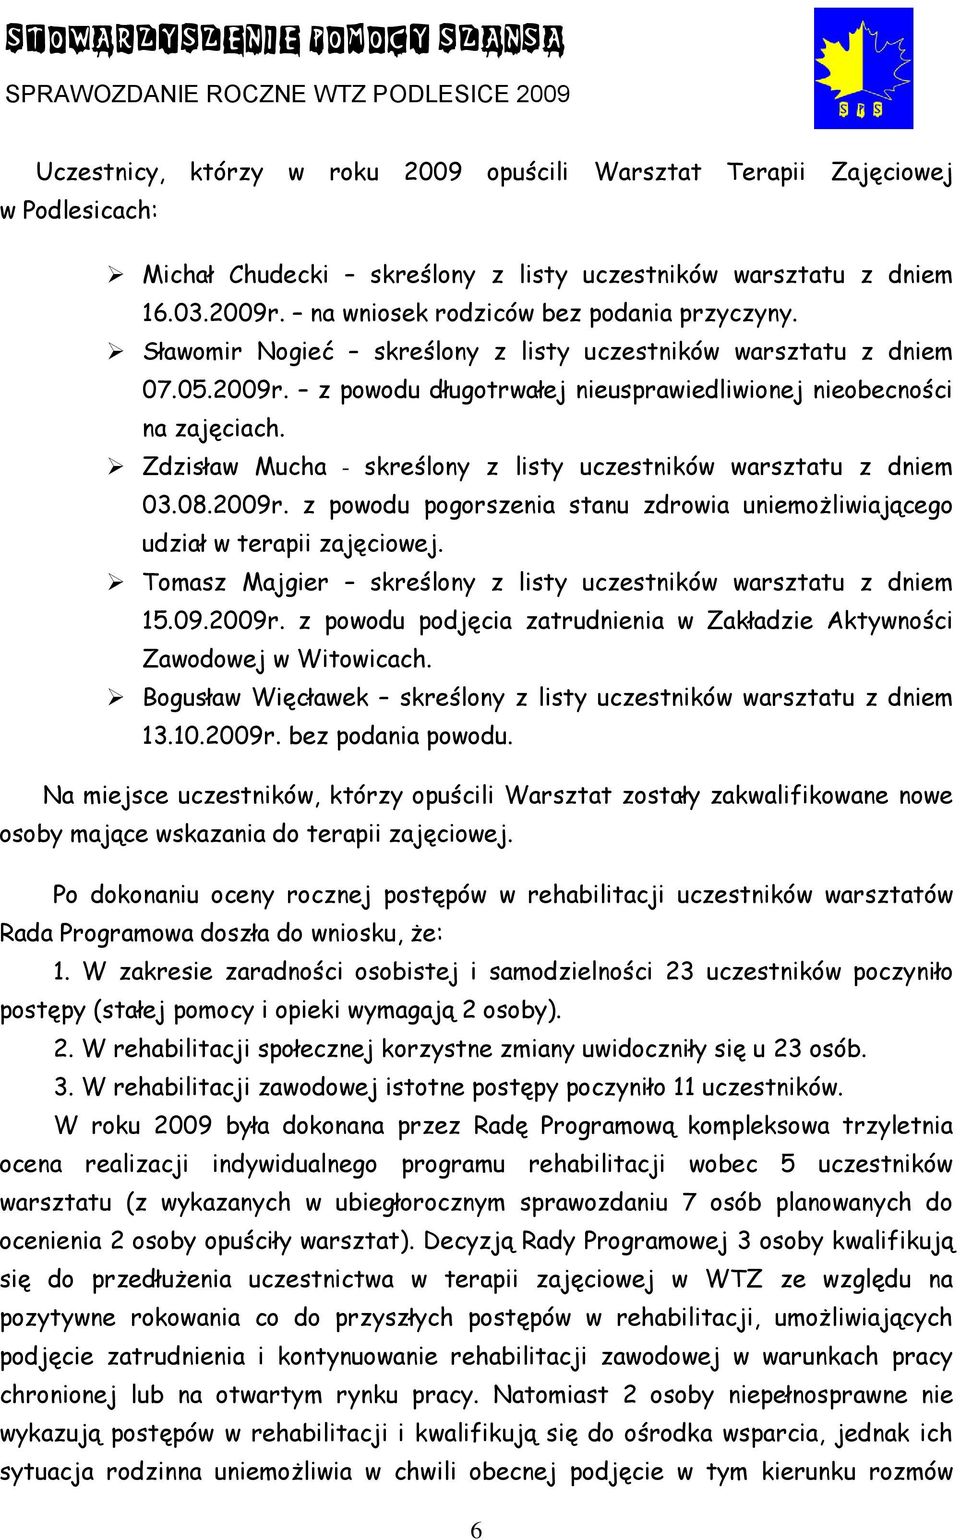 Zdzisław Mucha - skreślony z listy uczestników warsztatu z dniem 03.08.2009r. z powodu pogorszenia stanu zdrowia uniemożliwiającego udział w terapii zajęciowej.